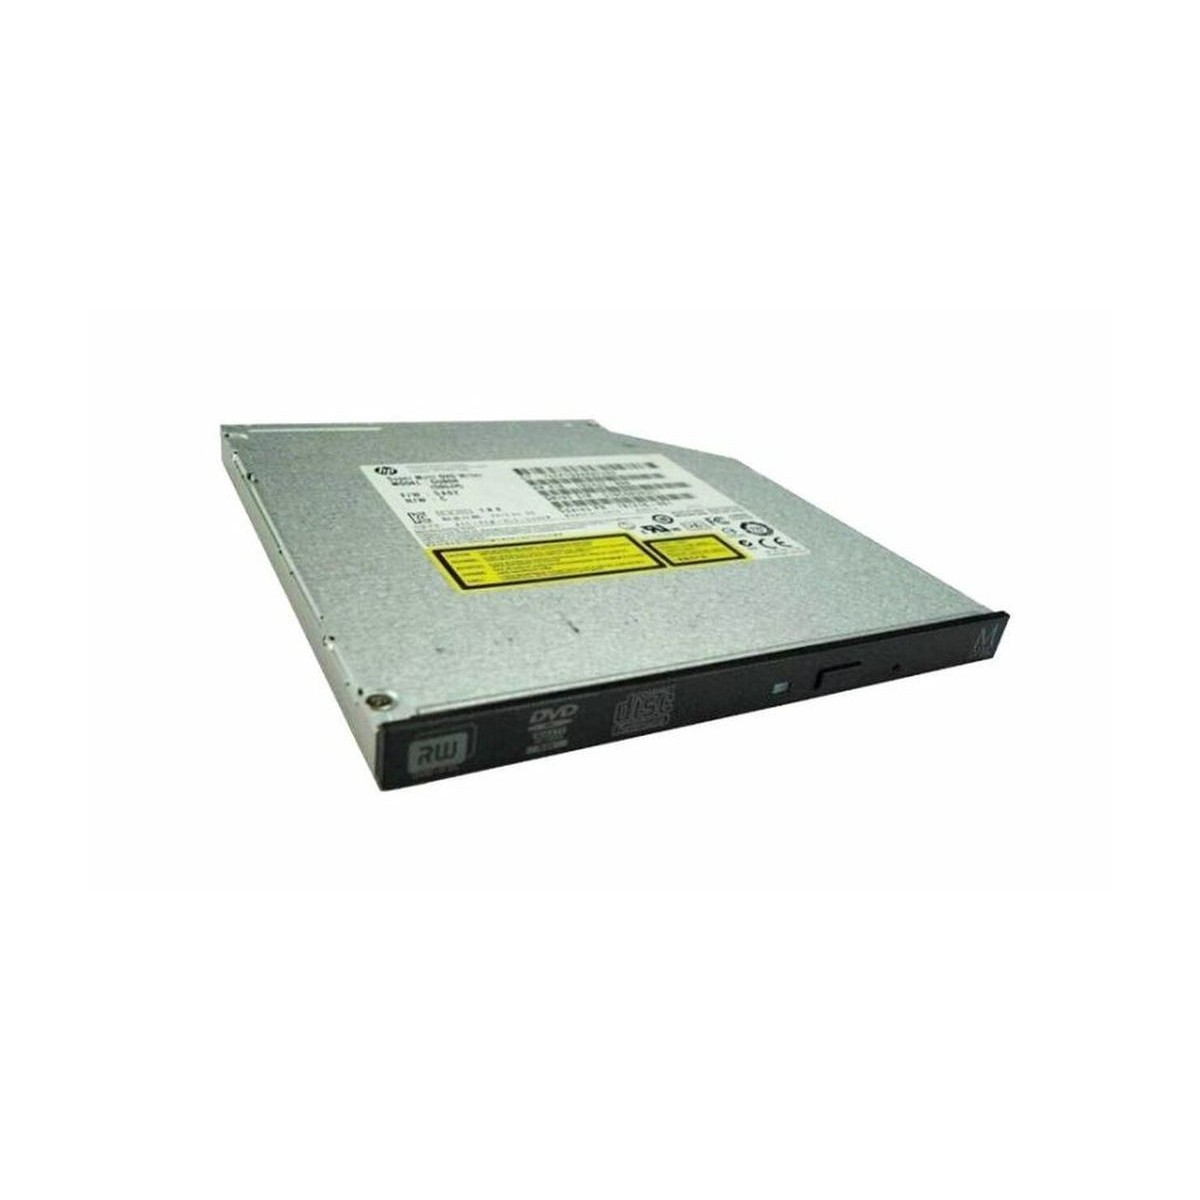 NAGRYWARKA HP DVD-RW SLIM SATA 460510-800 GTA0N